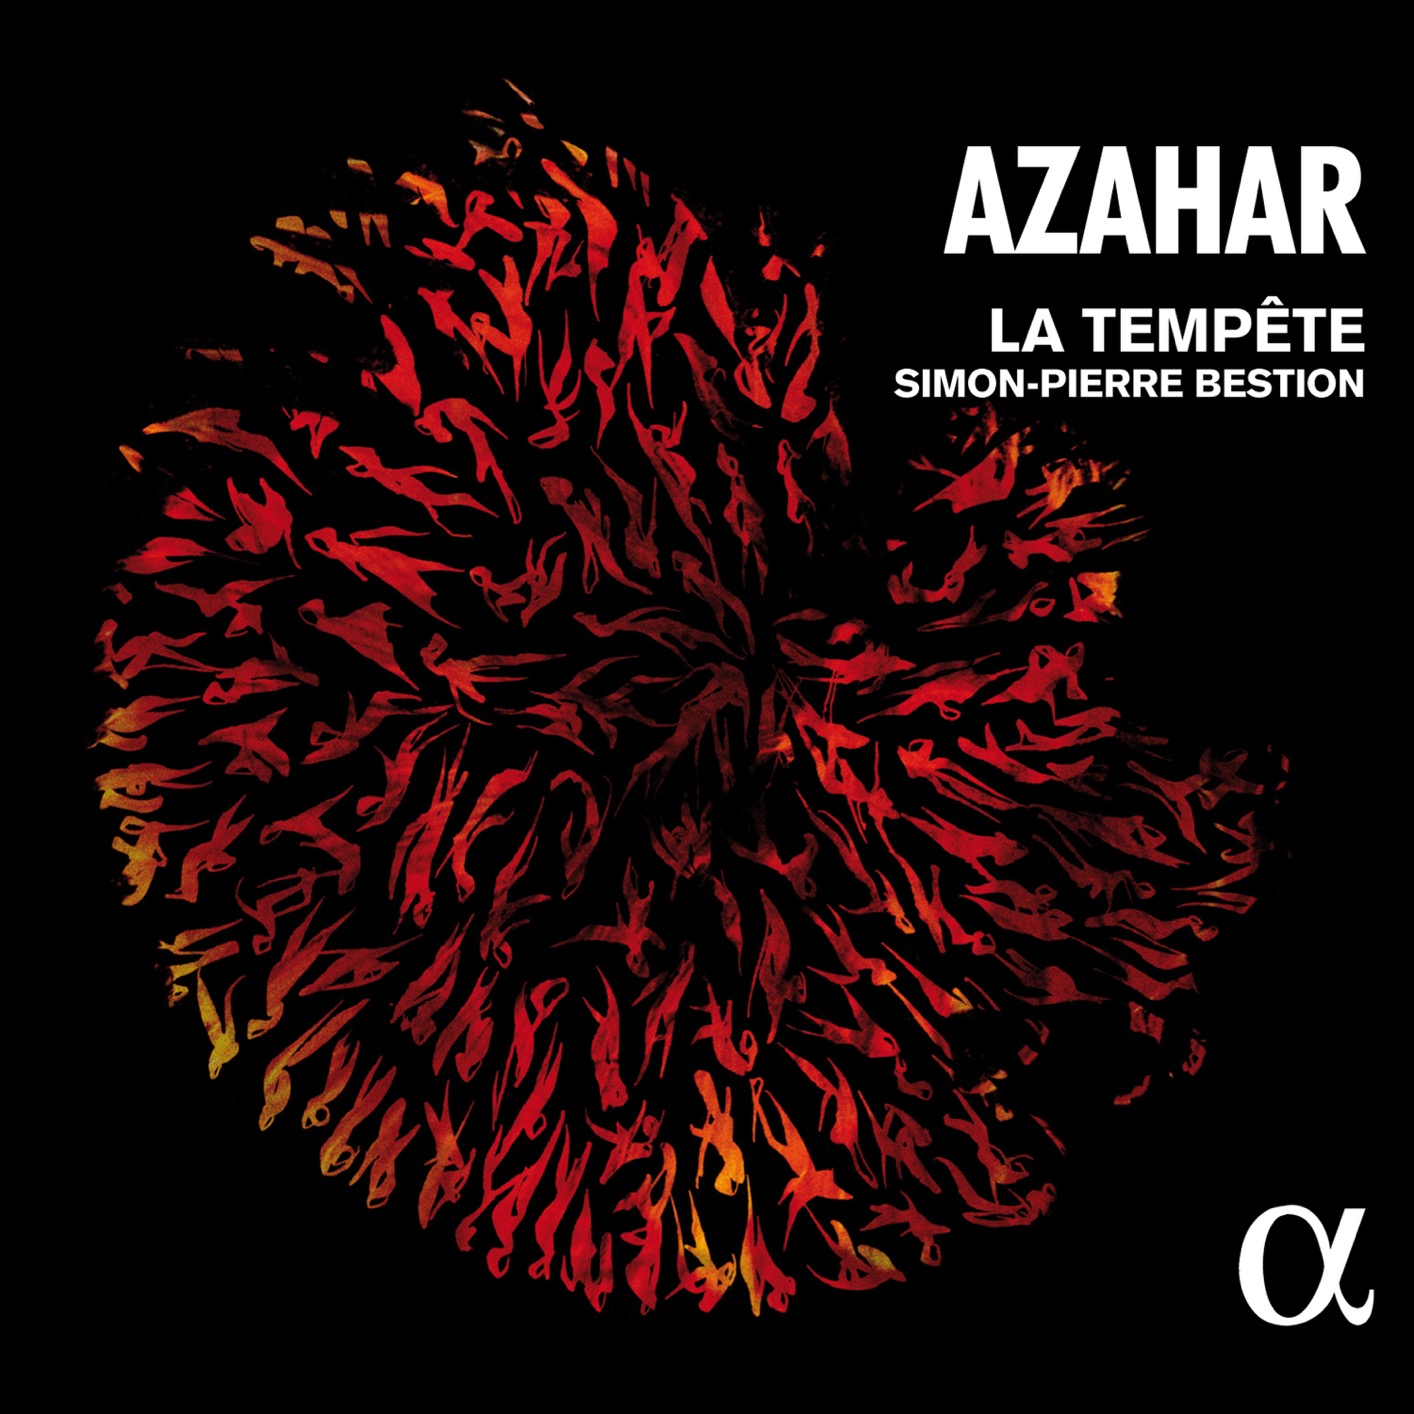 La Tempete & Simon-Pierre Bestion – Azahar (2017) [FLAC 24bit/88,2kHz]